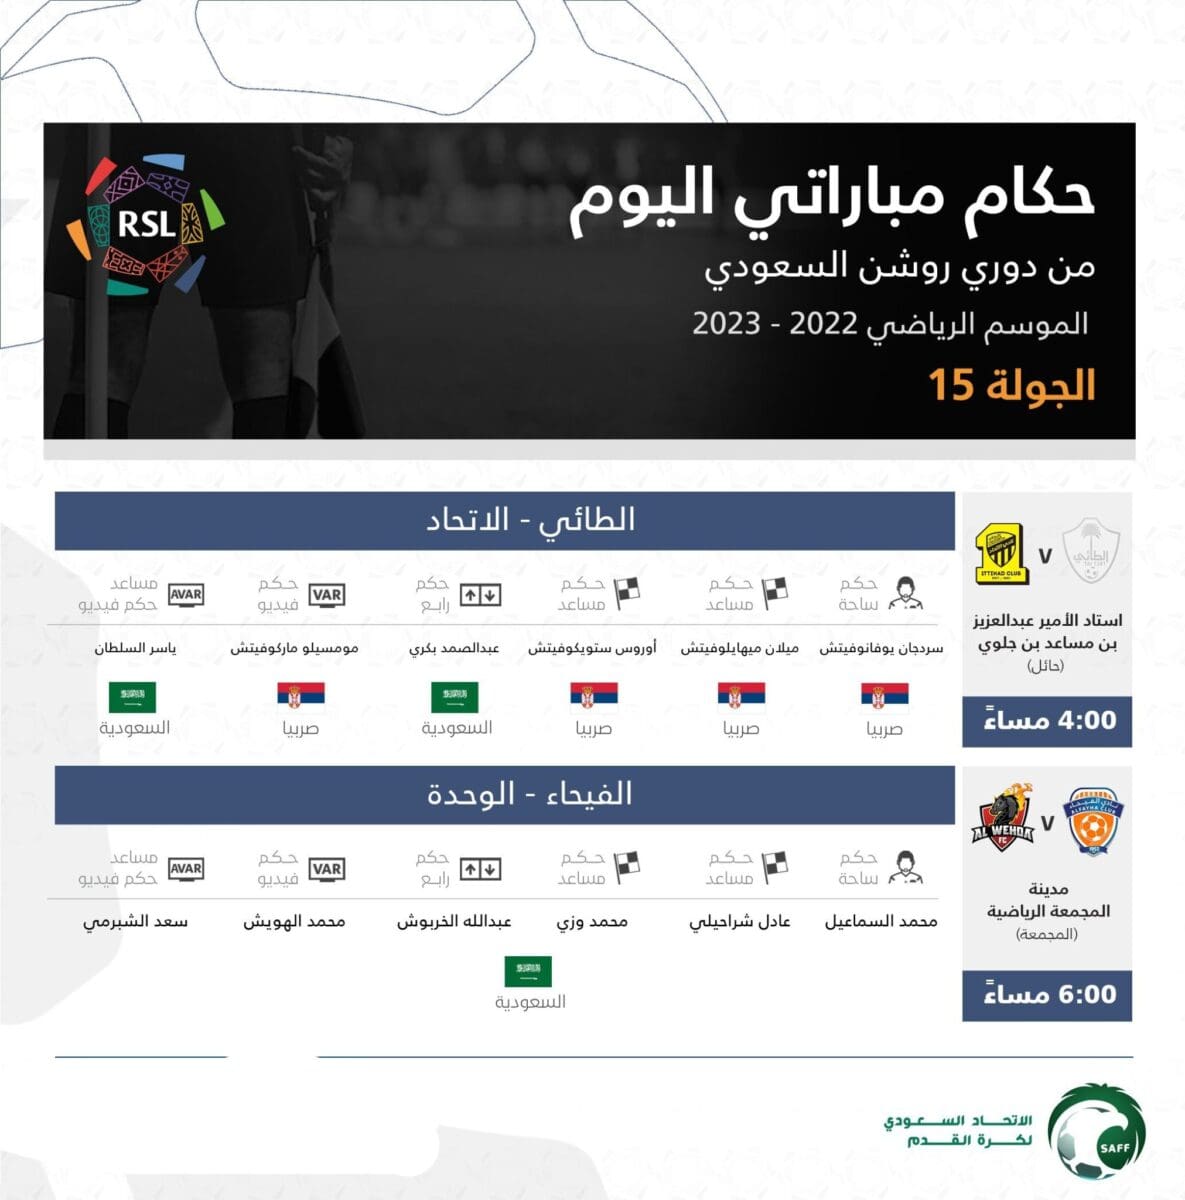 طاقم تحكيم مباريات اليوم الأخير عن الجولة 15 في الدوري السعودي 2023